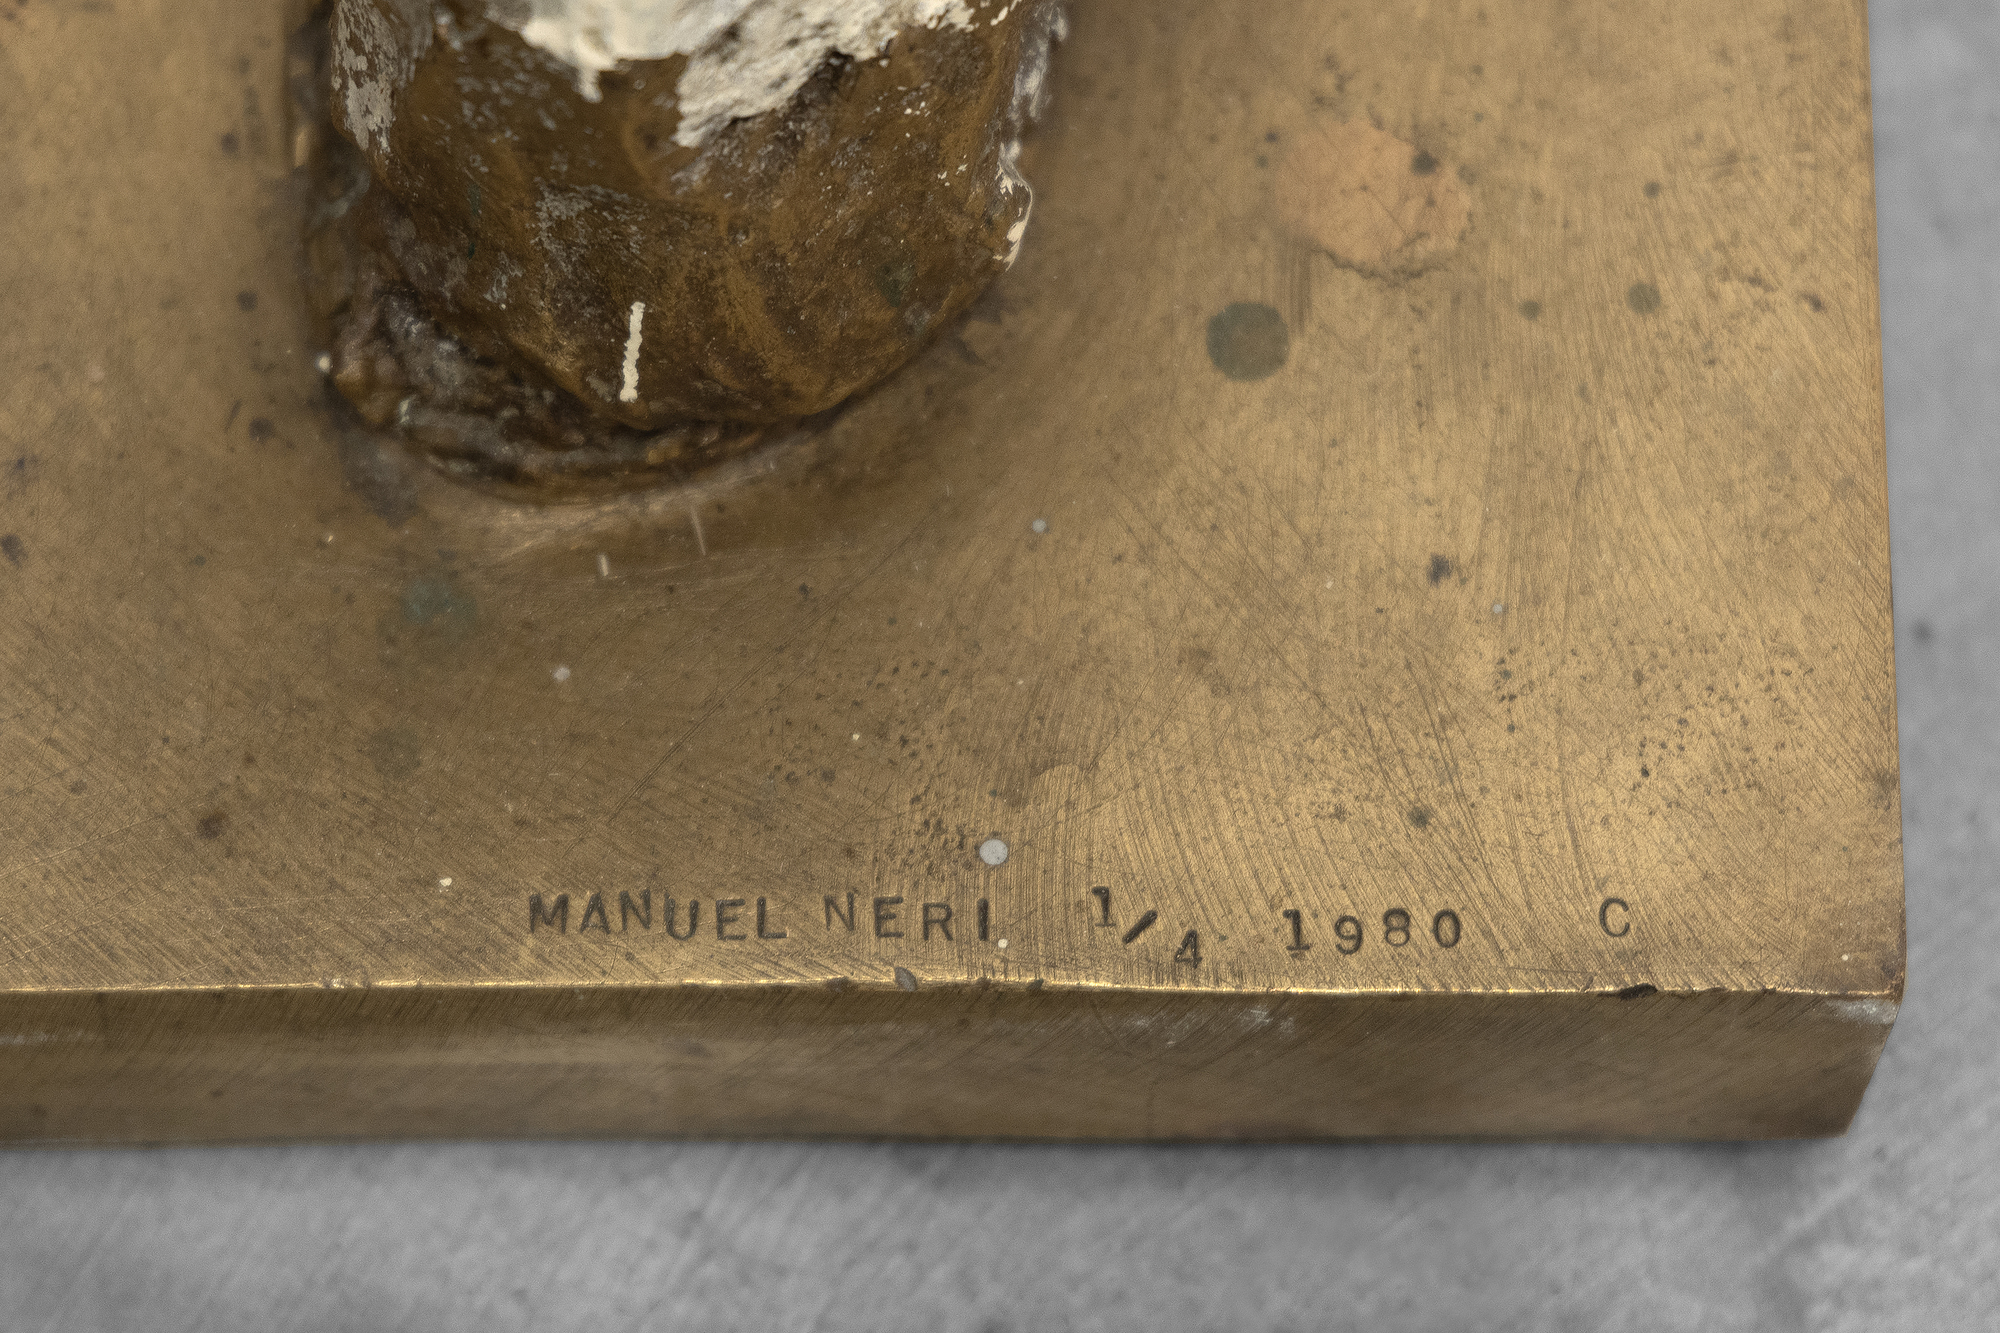 À la fin des années 1990, Manuel Neri a commencé à transformer de nombreuses sculptures en plâtre en bronze, revenant souvent à des œuvres antérieures pour produire de nouvelles interprétations imaginées de chaque pièce. Ces séries, presque indiscernables en termes de forme et de détails de surface, explorent l&#039;impact de différentes combinaisons de couleurs et de marquages qui impliquent diverses actions, notamment l&#039;incision, le brossage, le grattage ou la superposition de matériaux. En expérimentant différentes techniques de marquage, Neri a pu explorer l&#039;interaction entre la forme, la couleur, la texture et la lumière. Dans le contexte de la Figure debout n° 3, Neri a limité sa palette à une palette de couleurs analogues, en diluant la peinture pour créer des gradations subtiles qui mettent en valeur l&#039;extérieur lisse et raffiné de la sculpture.